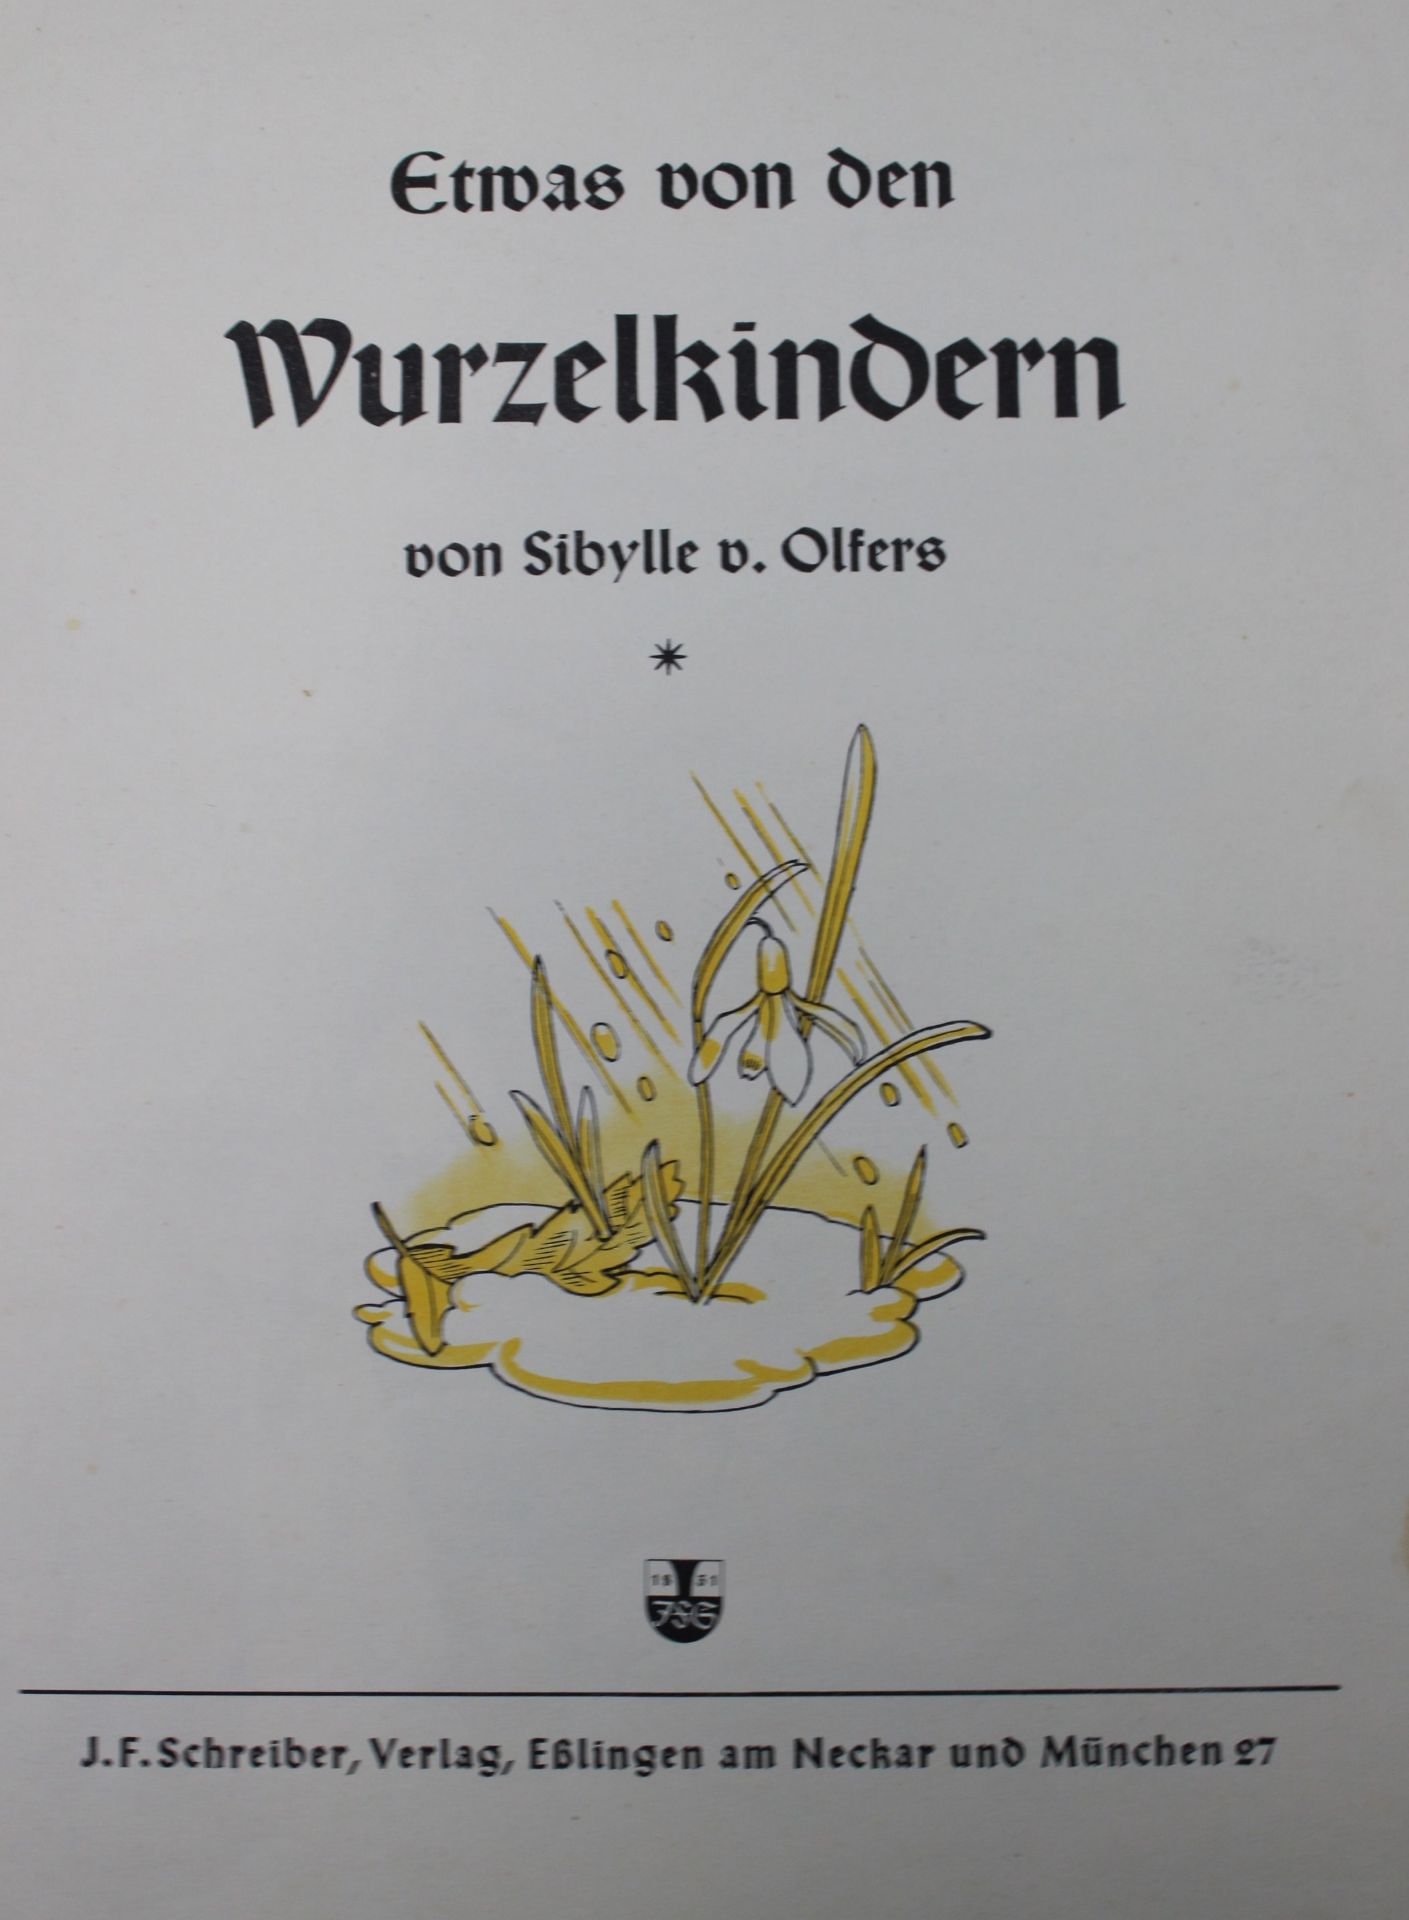 Sibylle v. Olfers, Etwas von den Wurzelkindern, Paperback, o. J. - Bild 2 aus 4